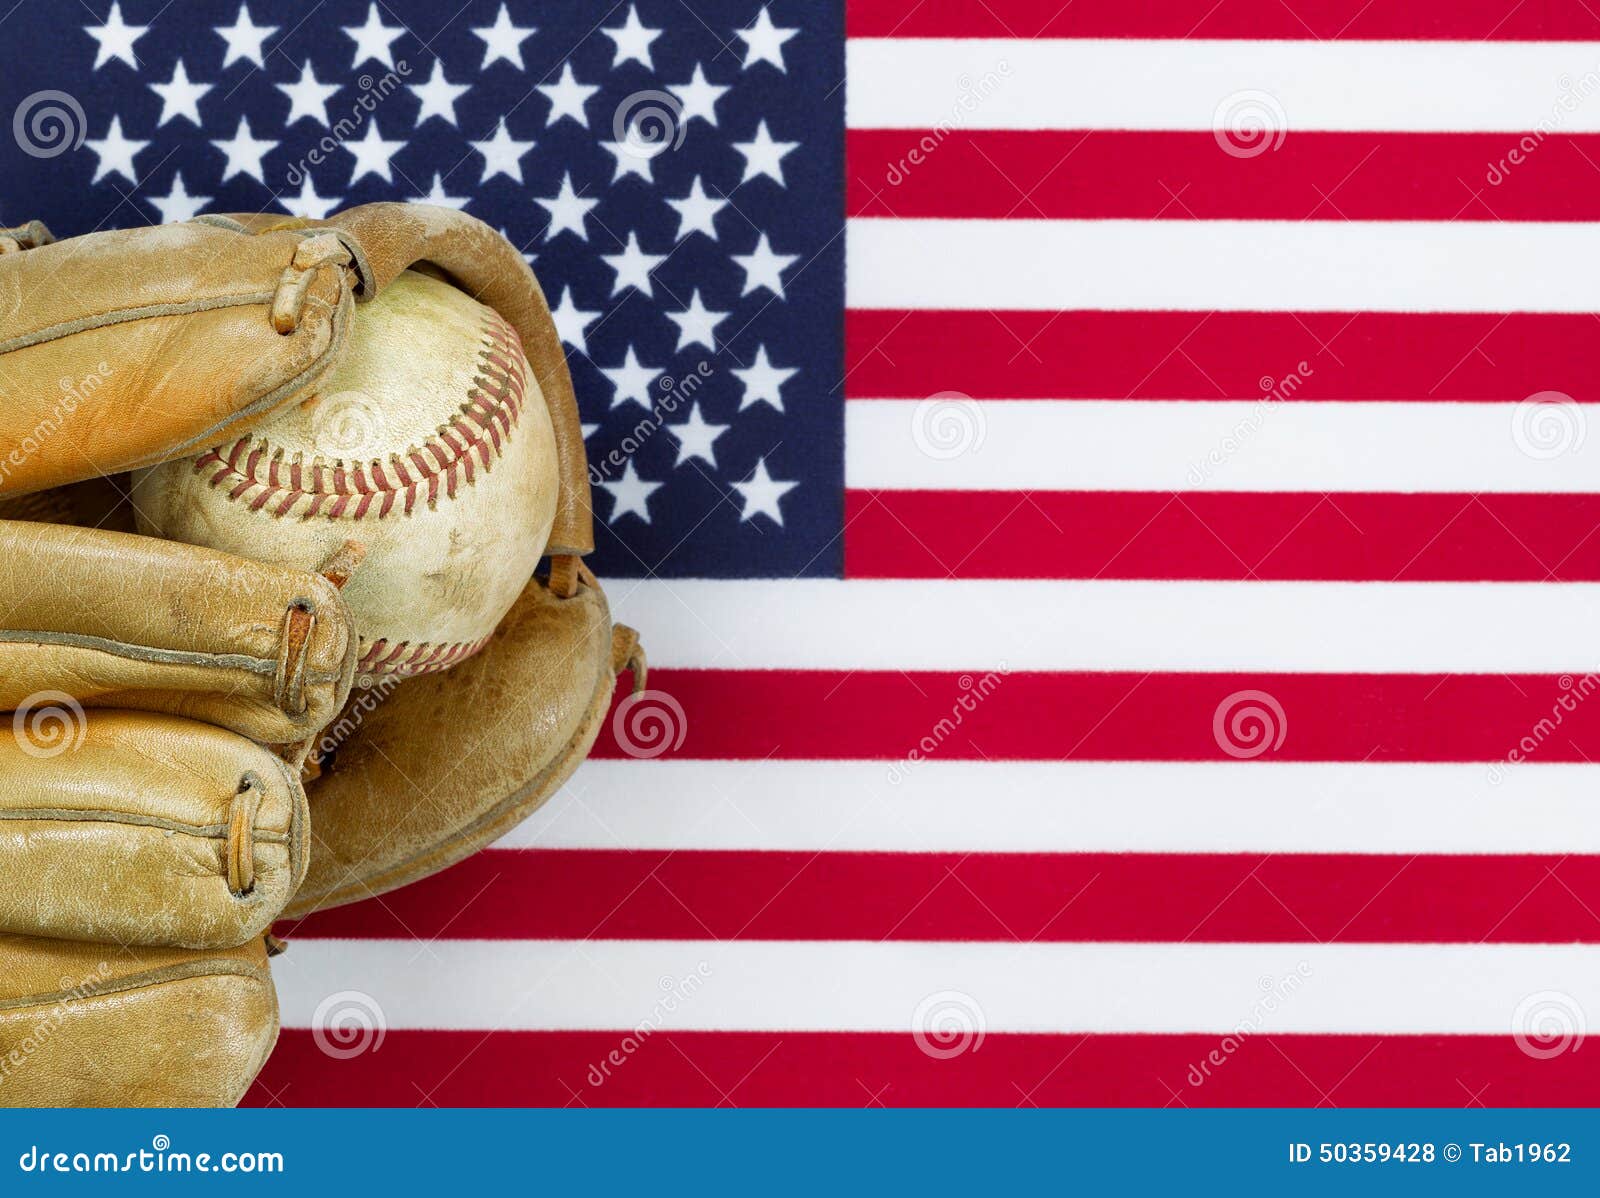 Guanto da baseball e palla consumati sulla bandiera americana. Chiuda sull'immagine del guanto mezzo di cuoio consumato e del baseball usato con la bandiera degli Stati Uniti d'America nel fondo Concetto dello sport di baseball in America